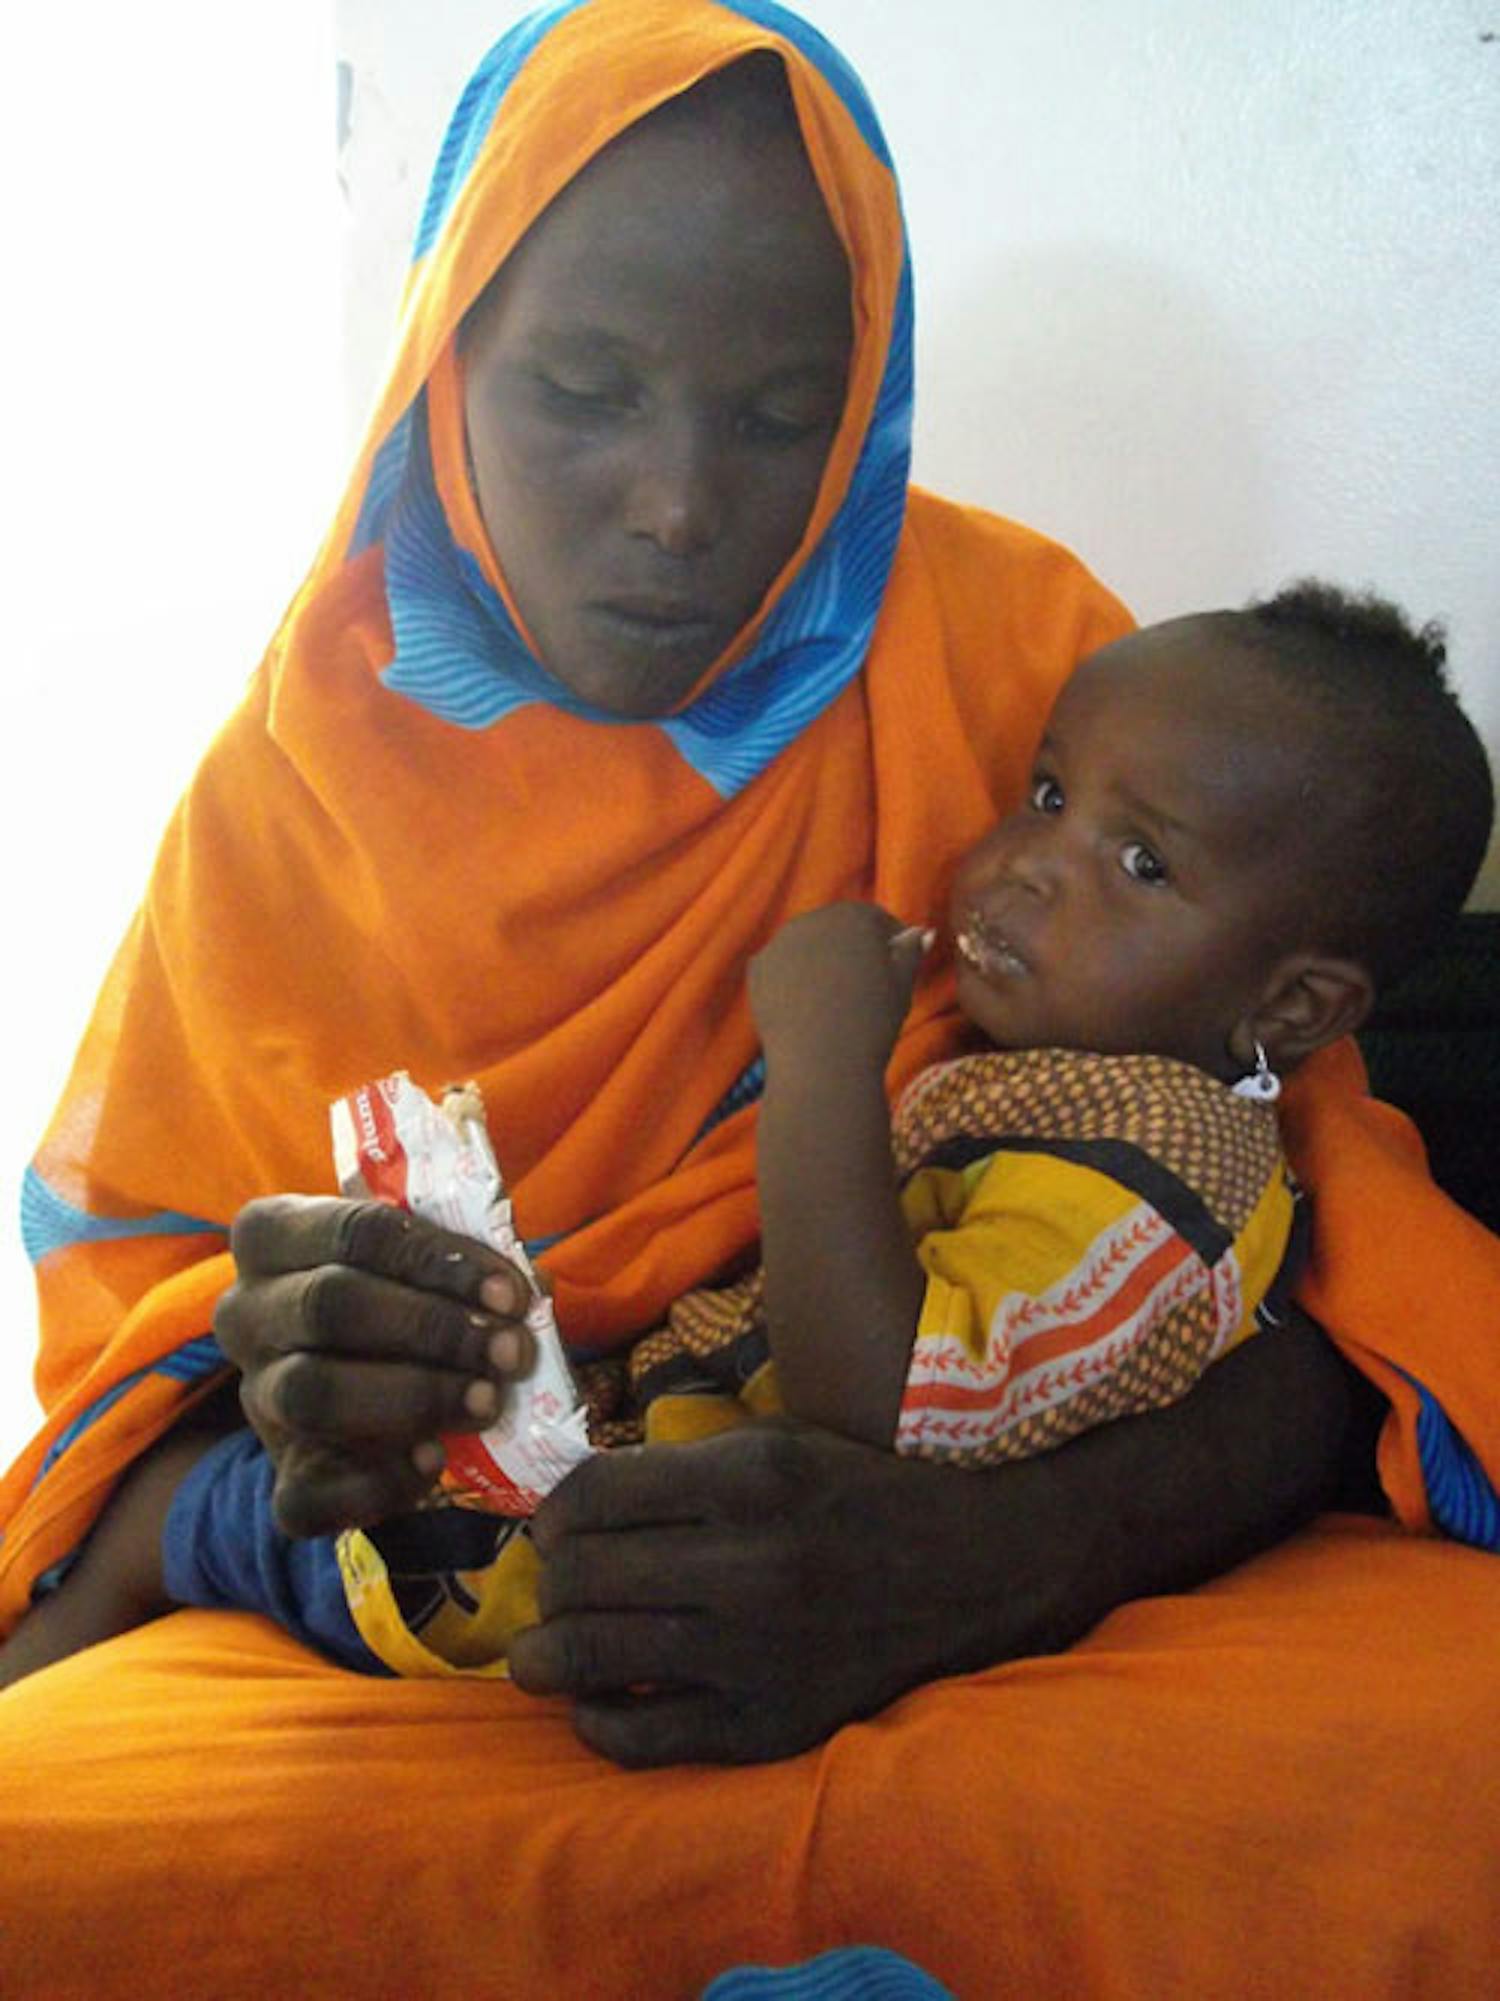 Questo bambino, in braccio alla mamma, mangia il Plumpynut, alimento terapeutico pronto per l'uso. ©Saira Cutrone